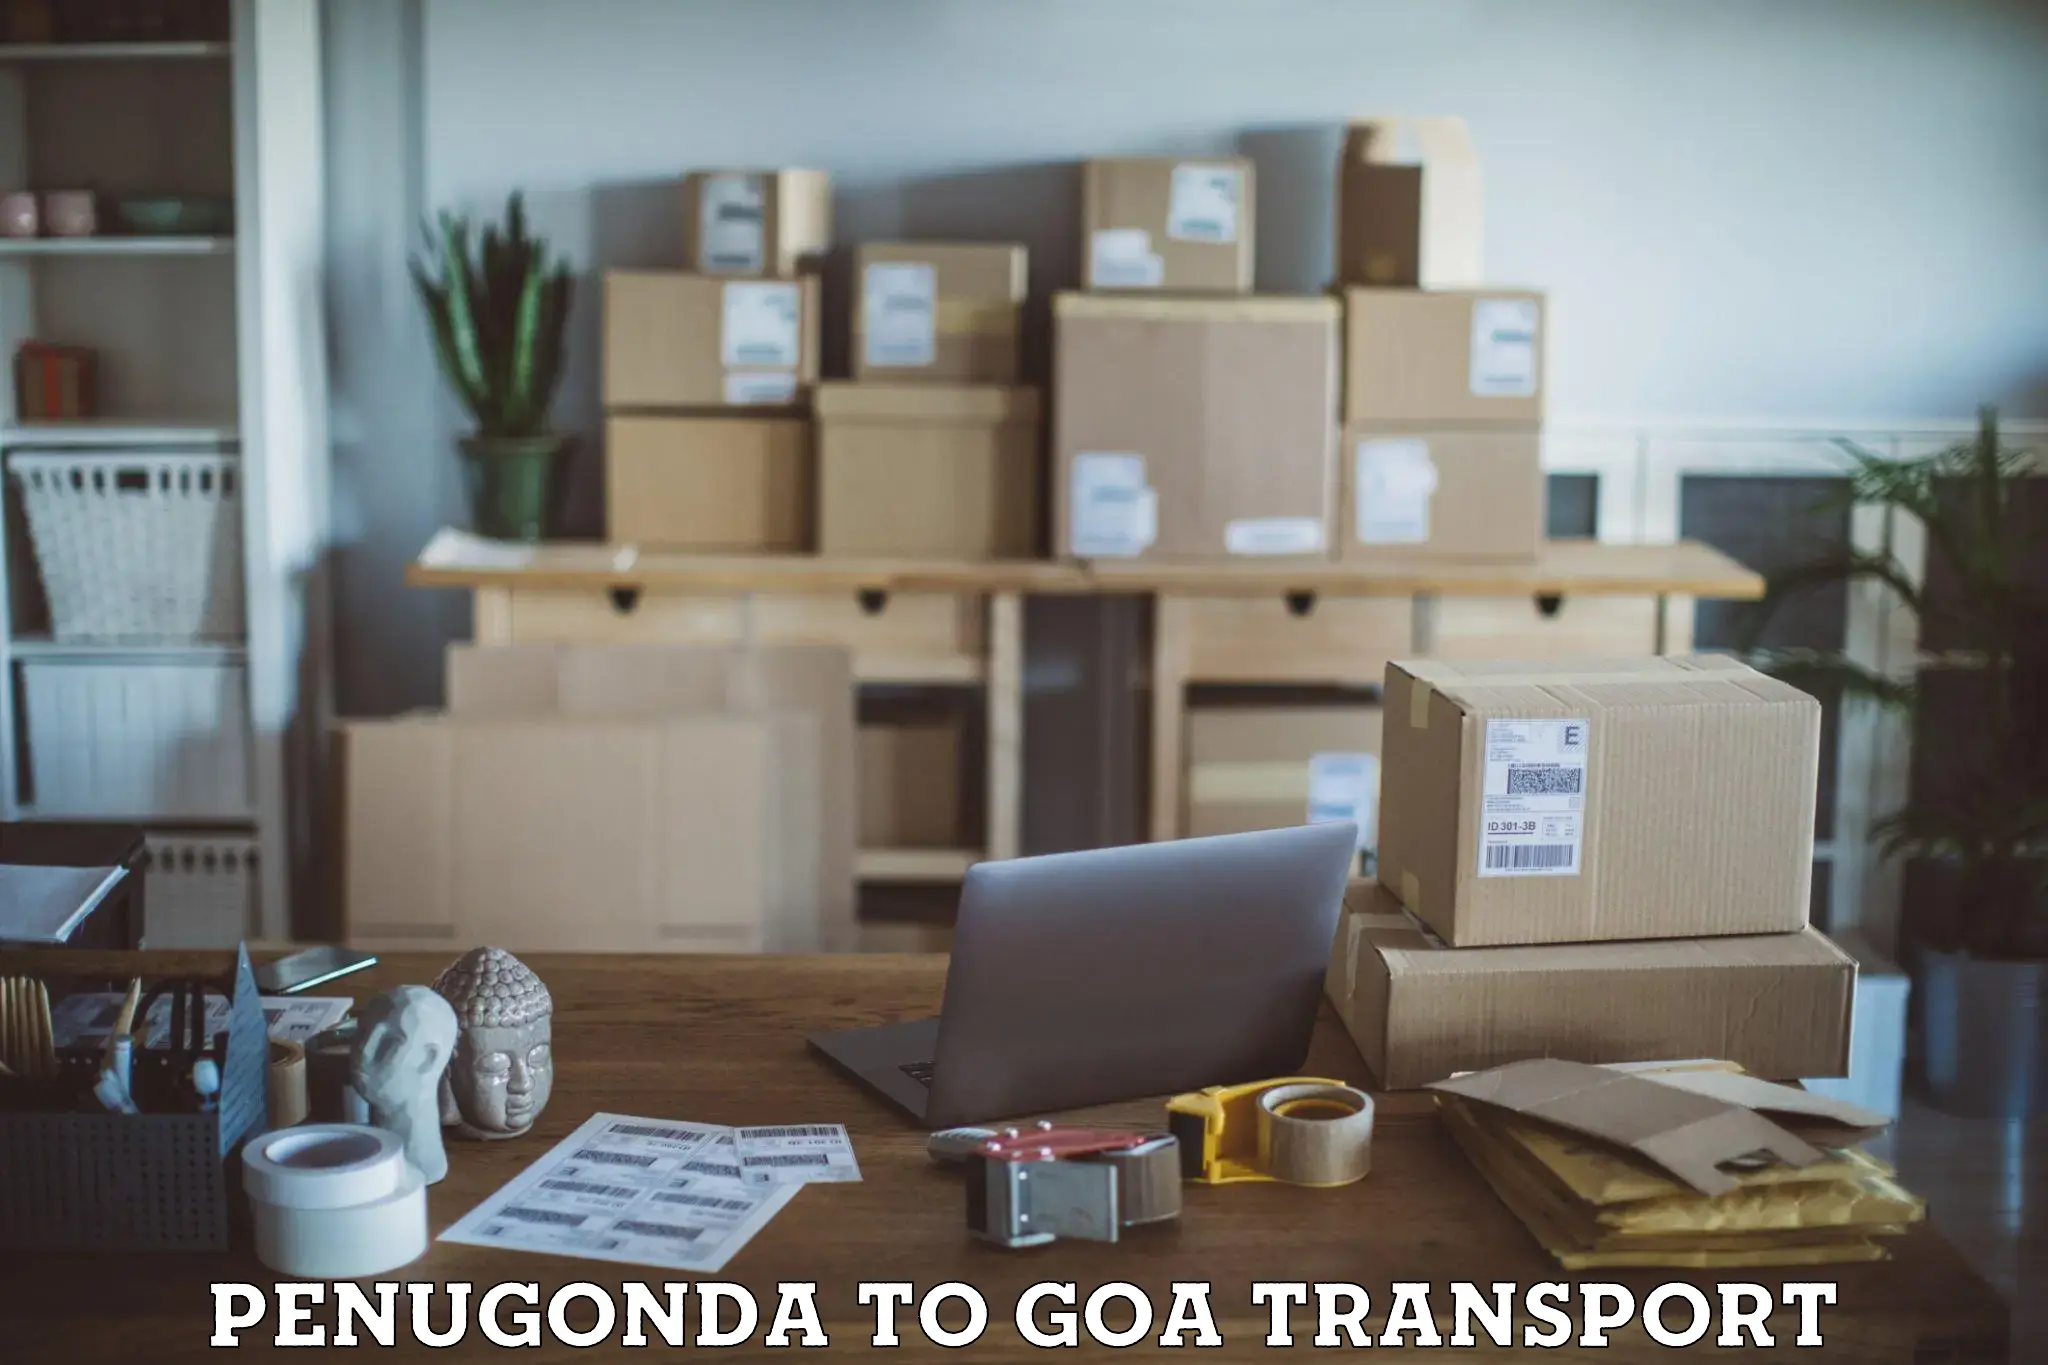 Daily parcel service transport Penugonda to Mormugao Port